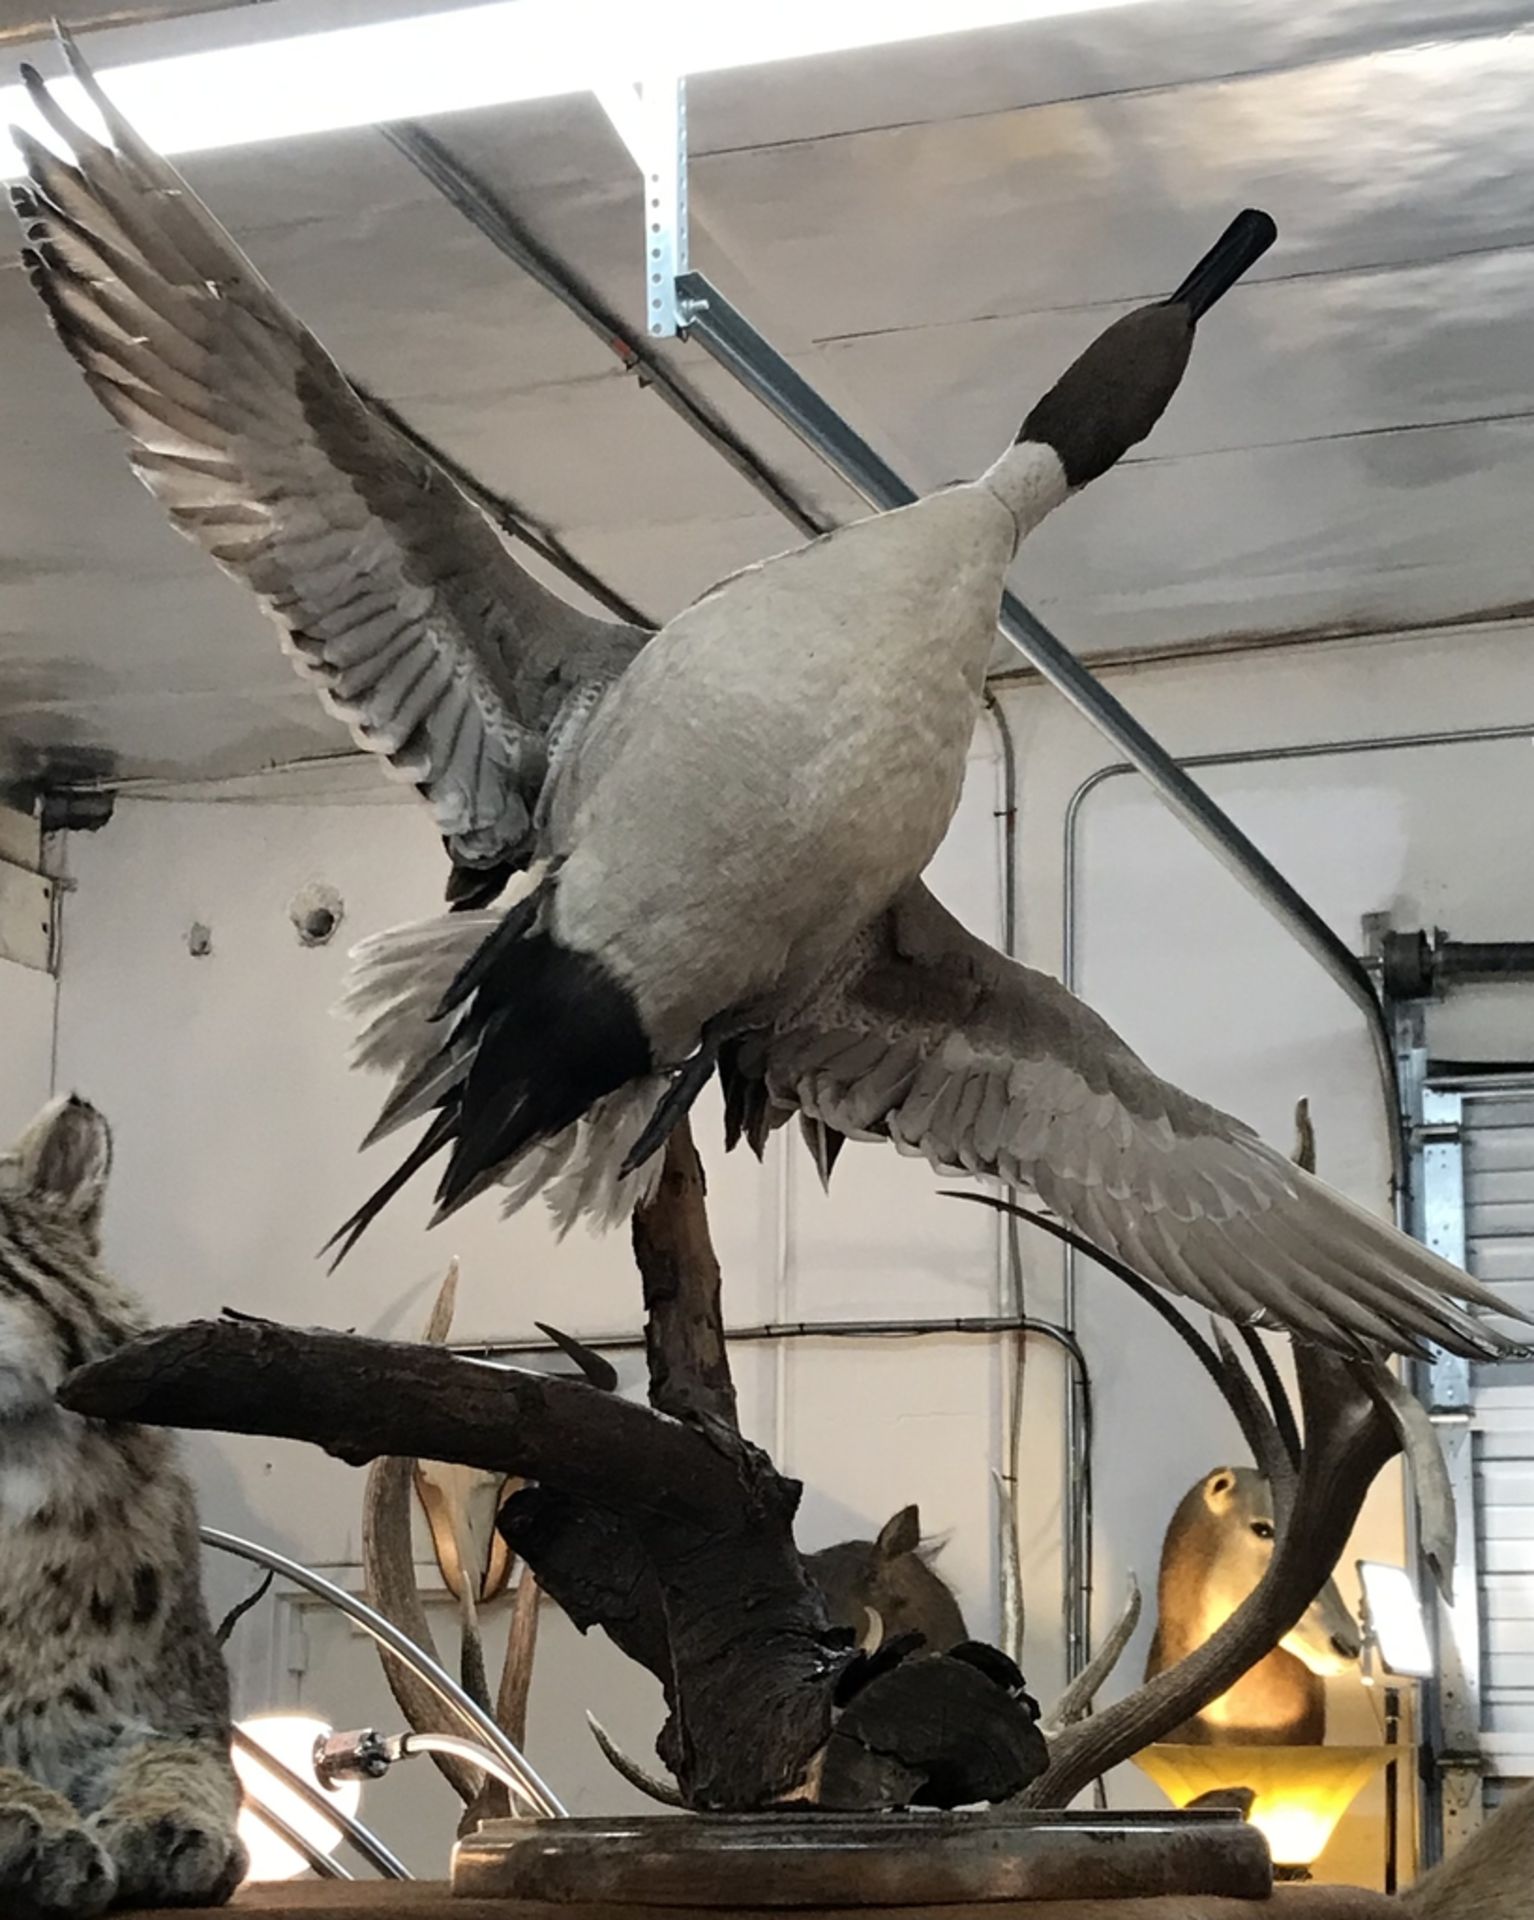 WHITE BIRD ON DESK PEDESTAL IN FLIGHT Taxidermy